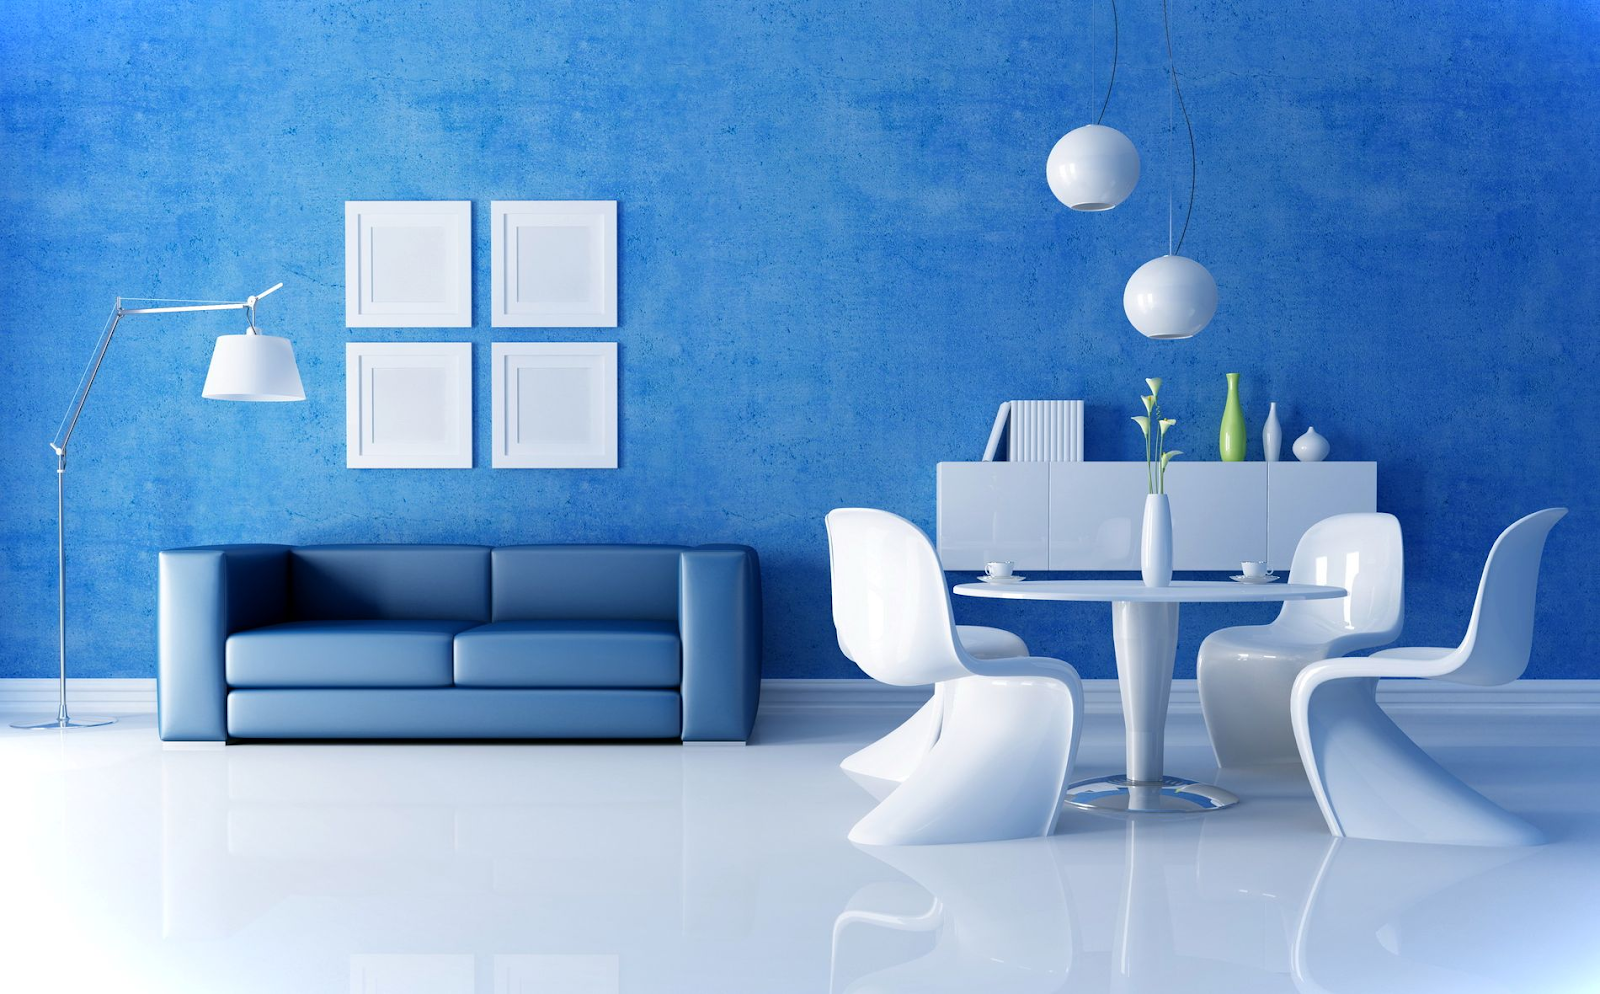 Sơn hiệu ứng Waldo-Sơn màu nổi bật 2021-Sơn hiệu ứng không gian phòng khách màu xanh dương